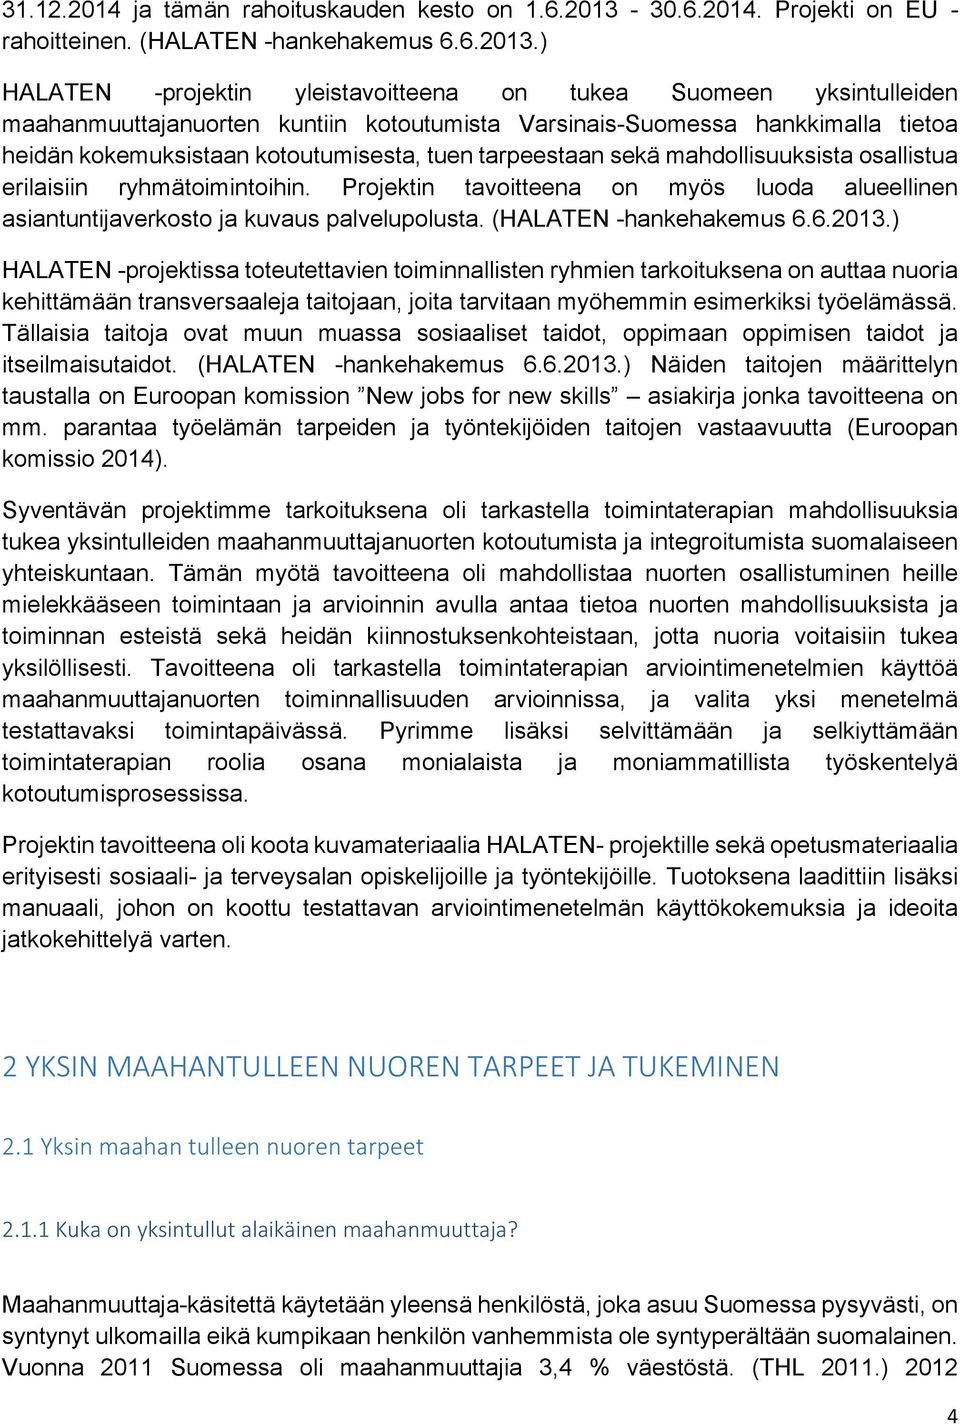 ) HALATEN -projektin yleistavoitteena on tukea Suomeen yksintulleiden maahanmuuttajanuorten kuntiin kotoutumista Varsinais-Suomessa hankkimalla tietoa heidän kokemuksistaan kotoutumisesta, tuen